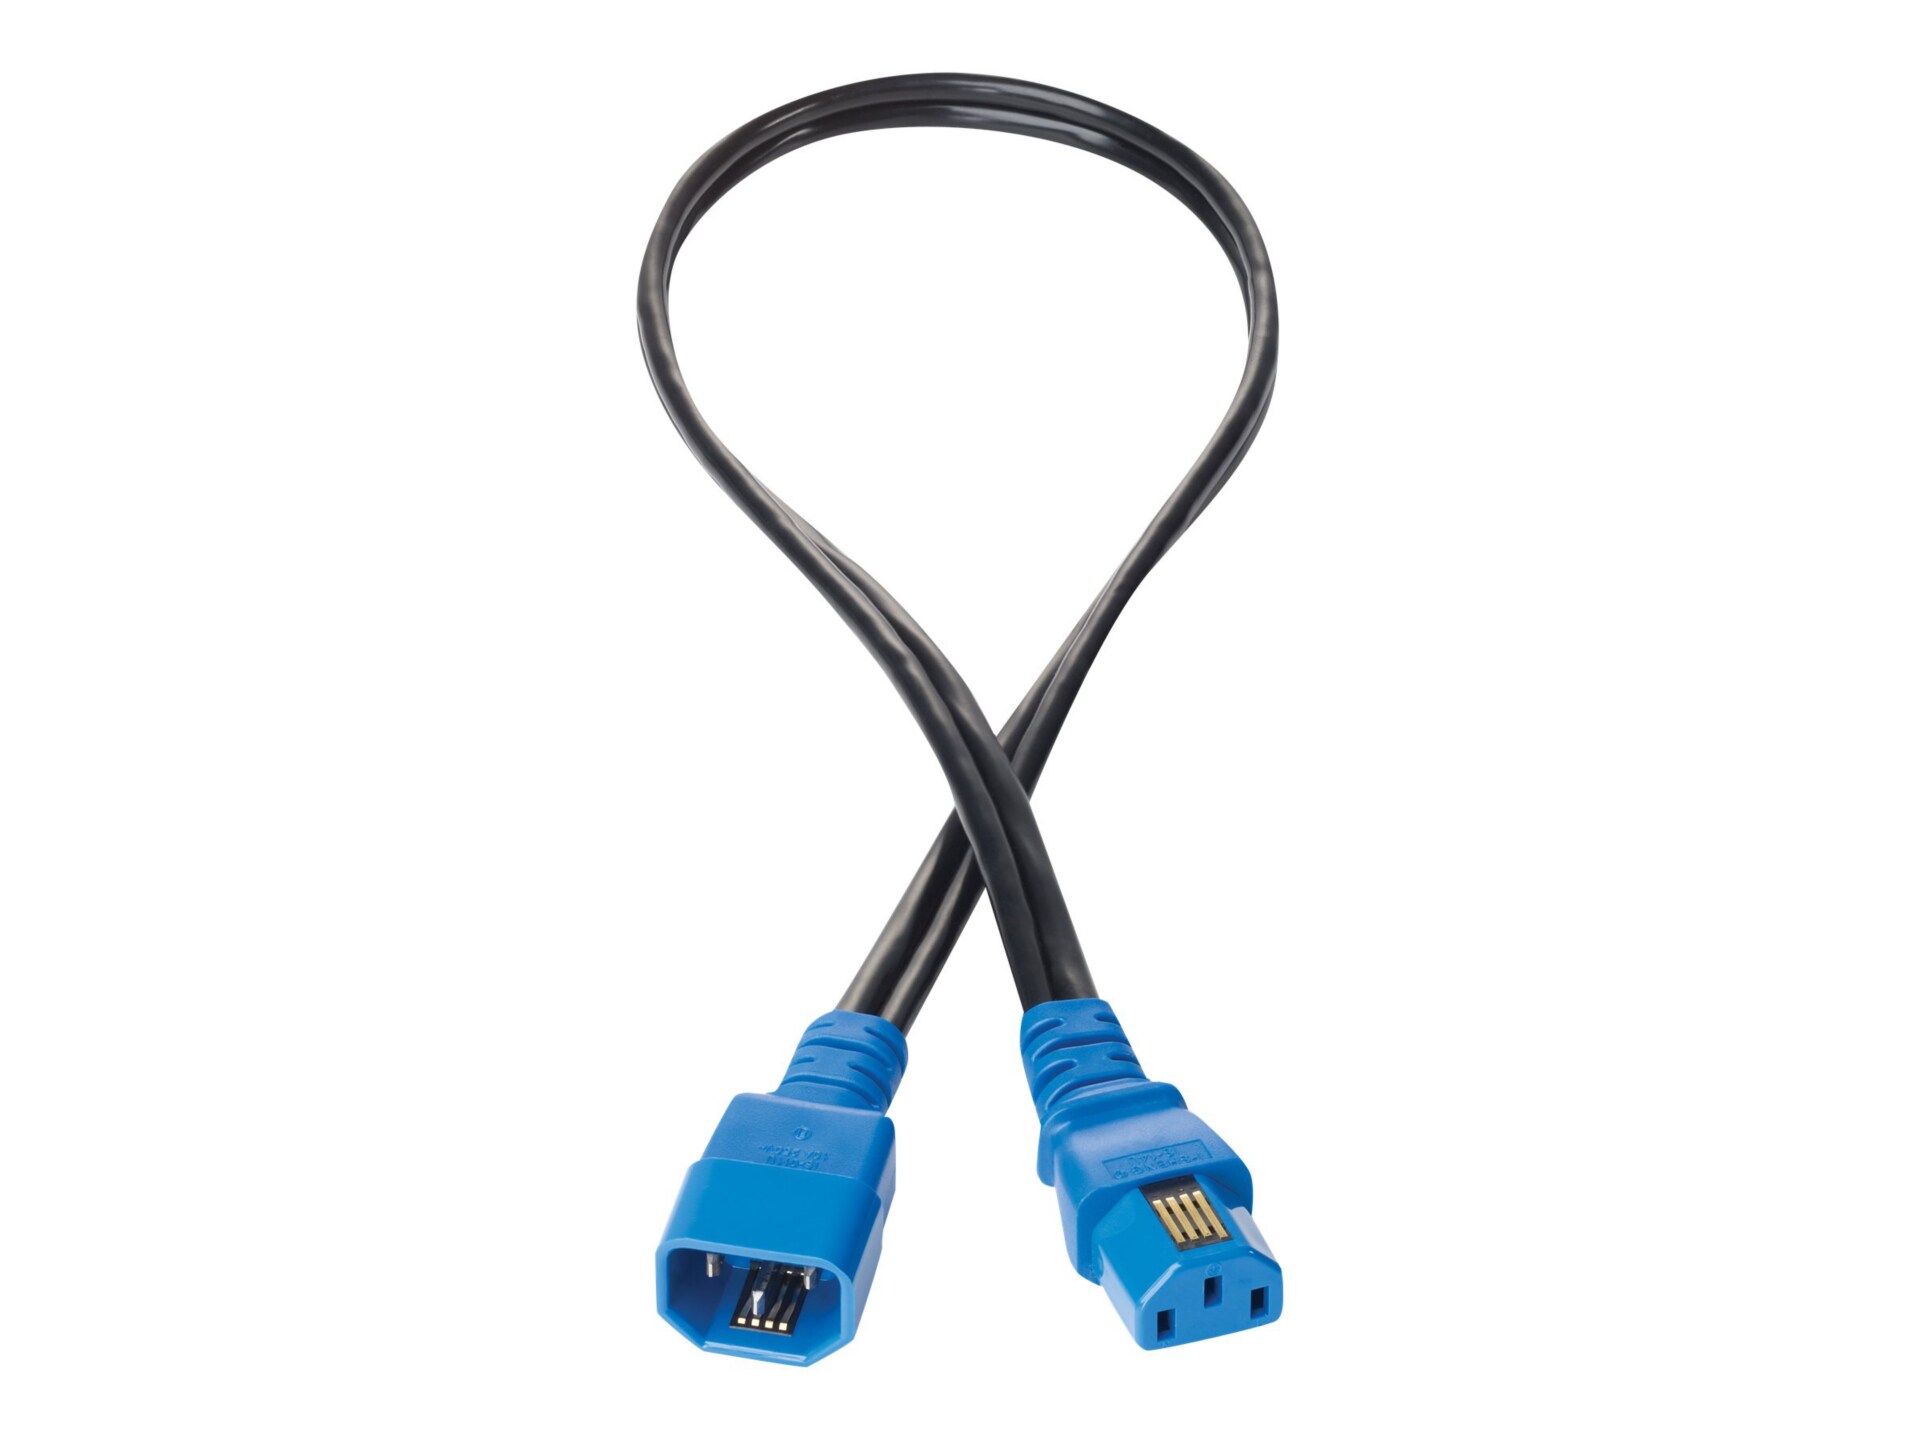 HPE Jumper Cord - câble d'alimentation - power IEC 60320 C13 pour IEC 60320 C14 - 2 m